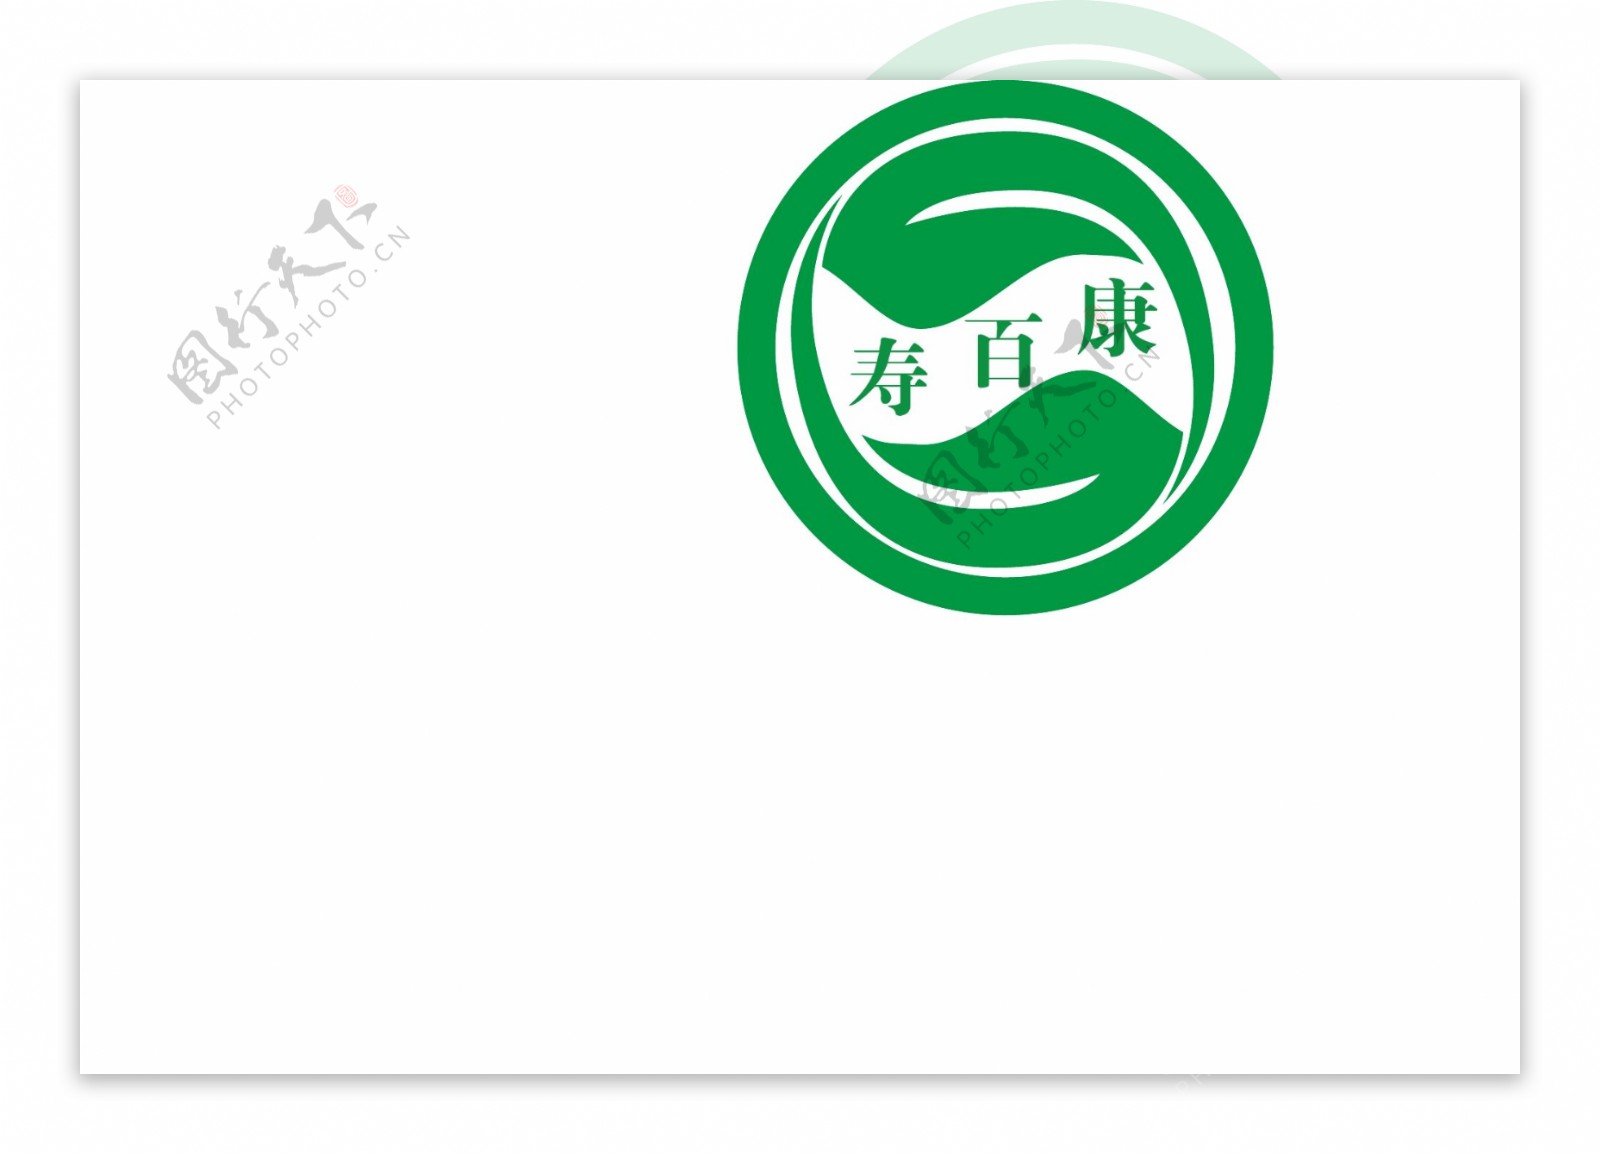 寿百康logo图片